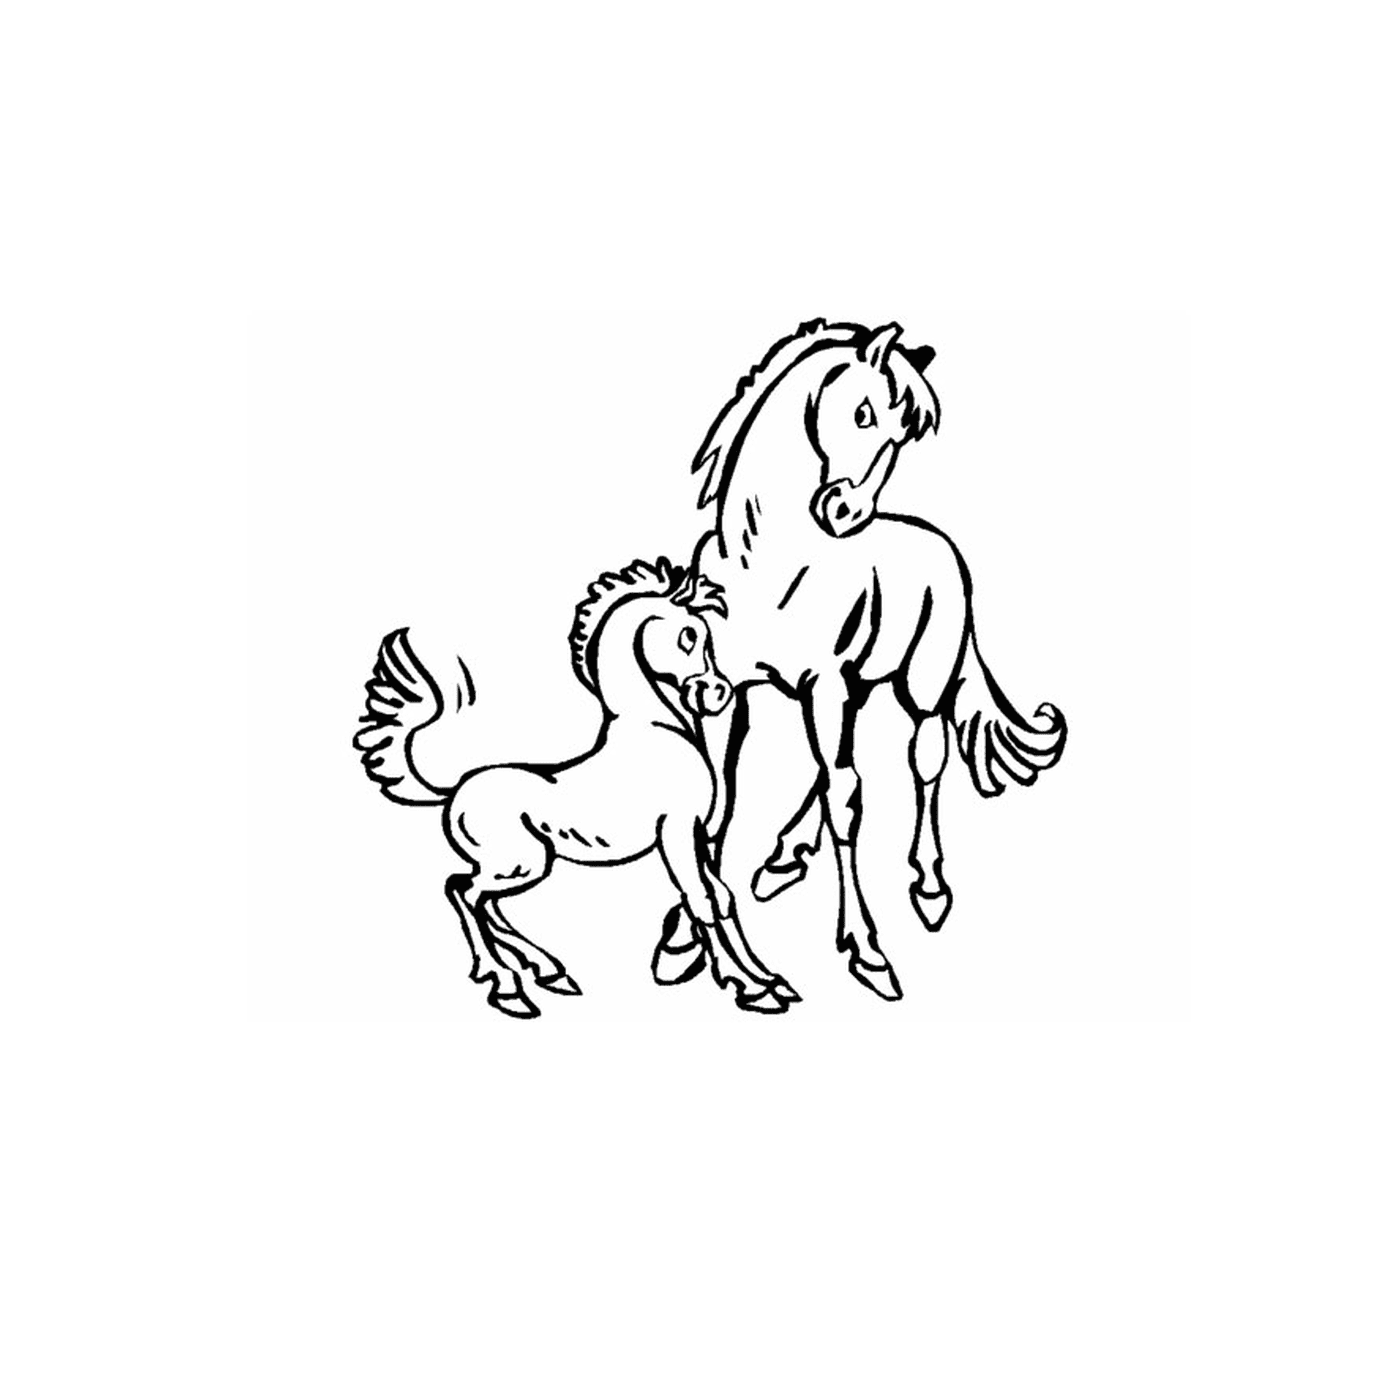  Cavallo e il suo adorabile puledro 